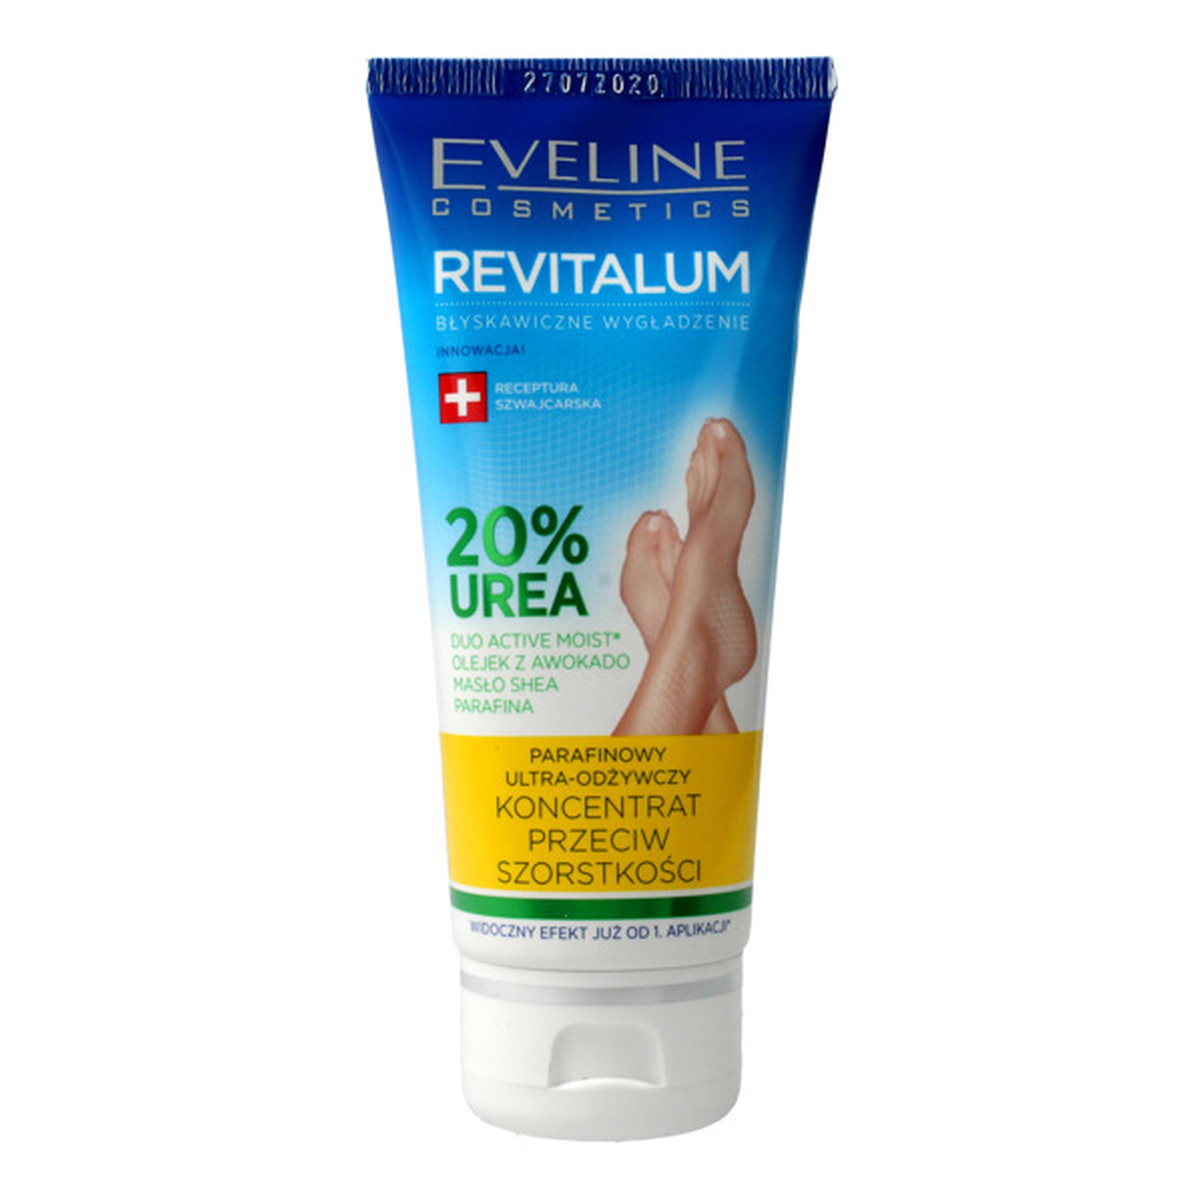 Eveline Revitalum 20% Urea Koncentrat przeciw szorstkości stóp parafinowy 100ml